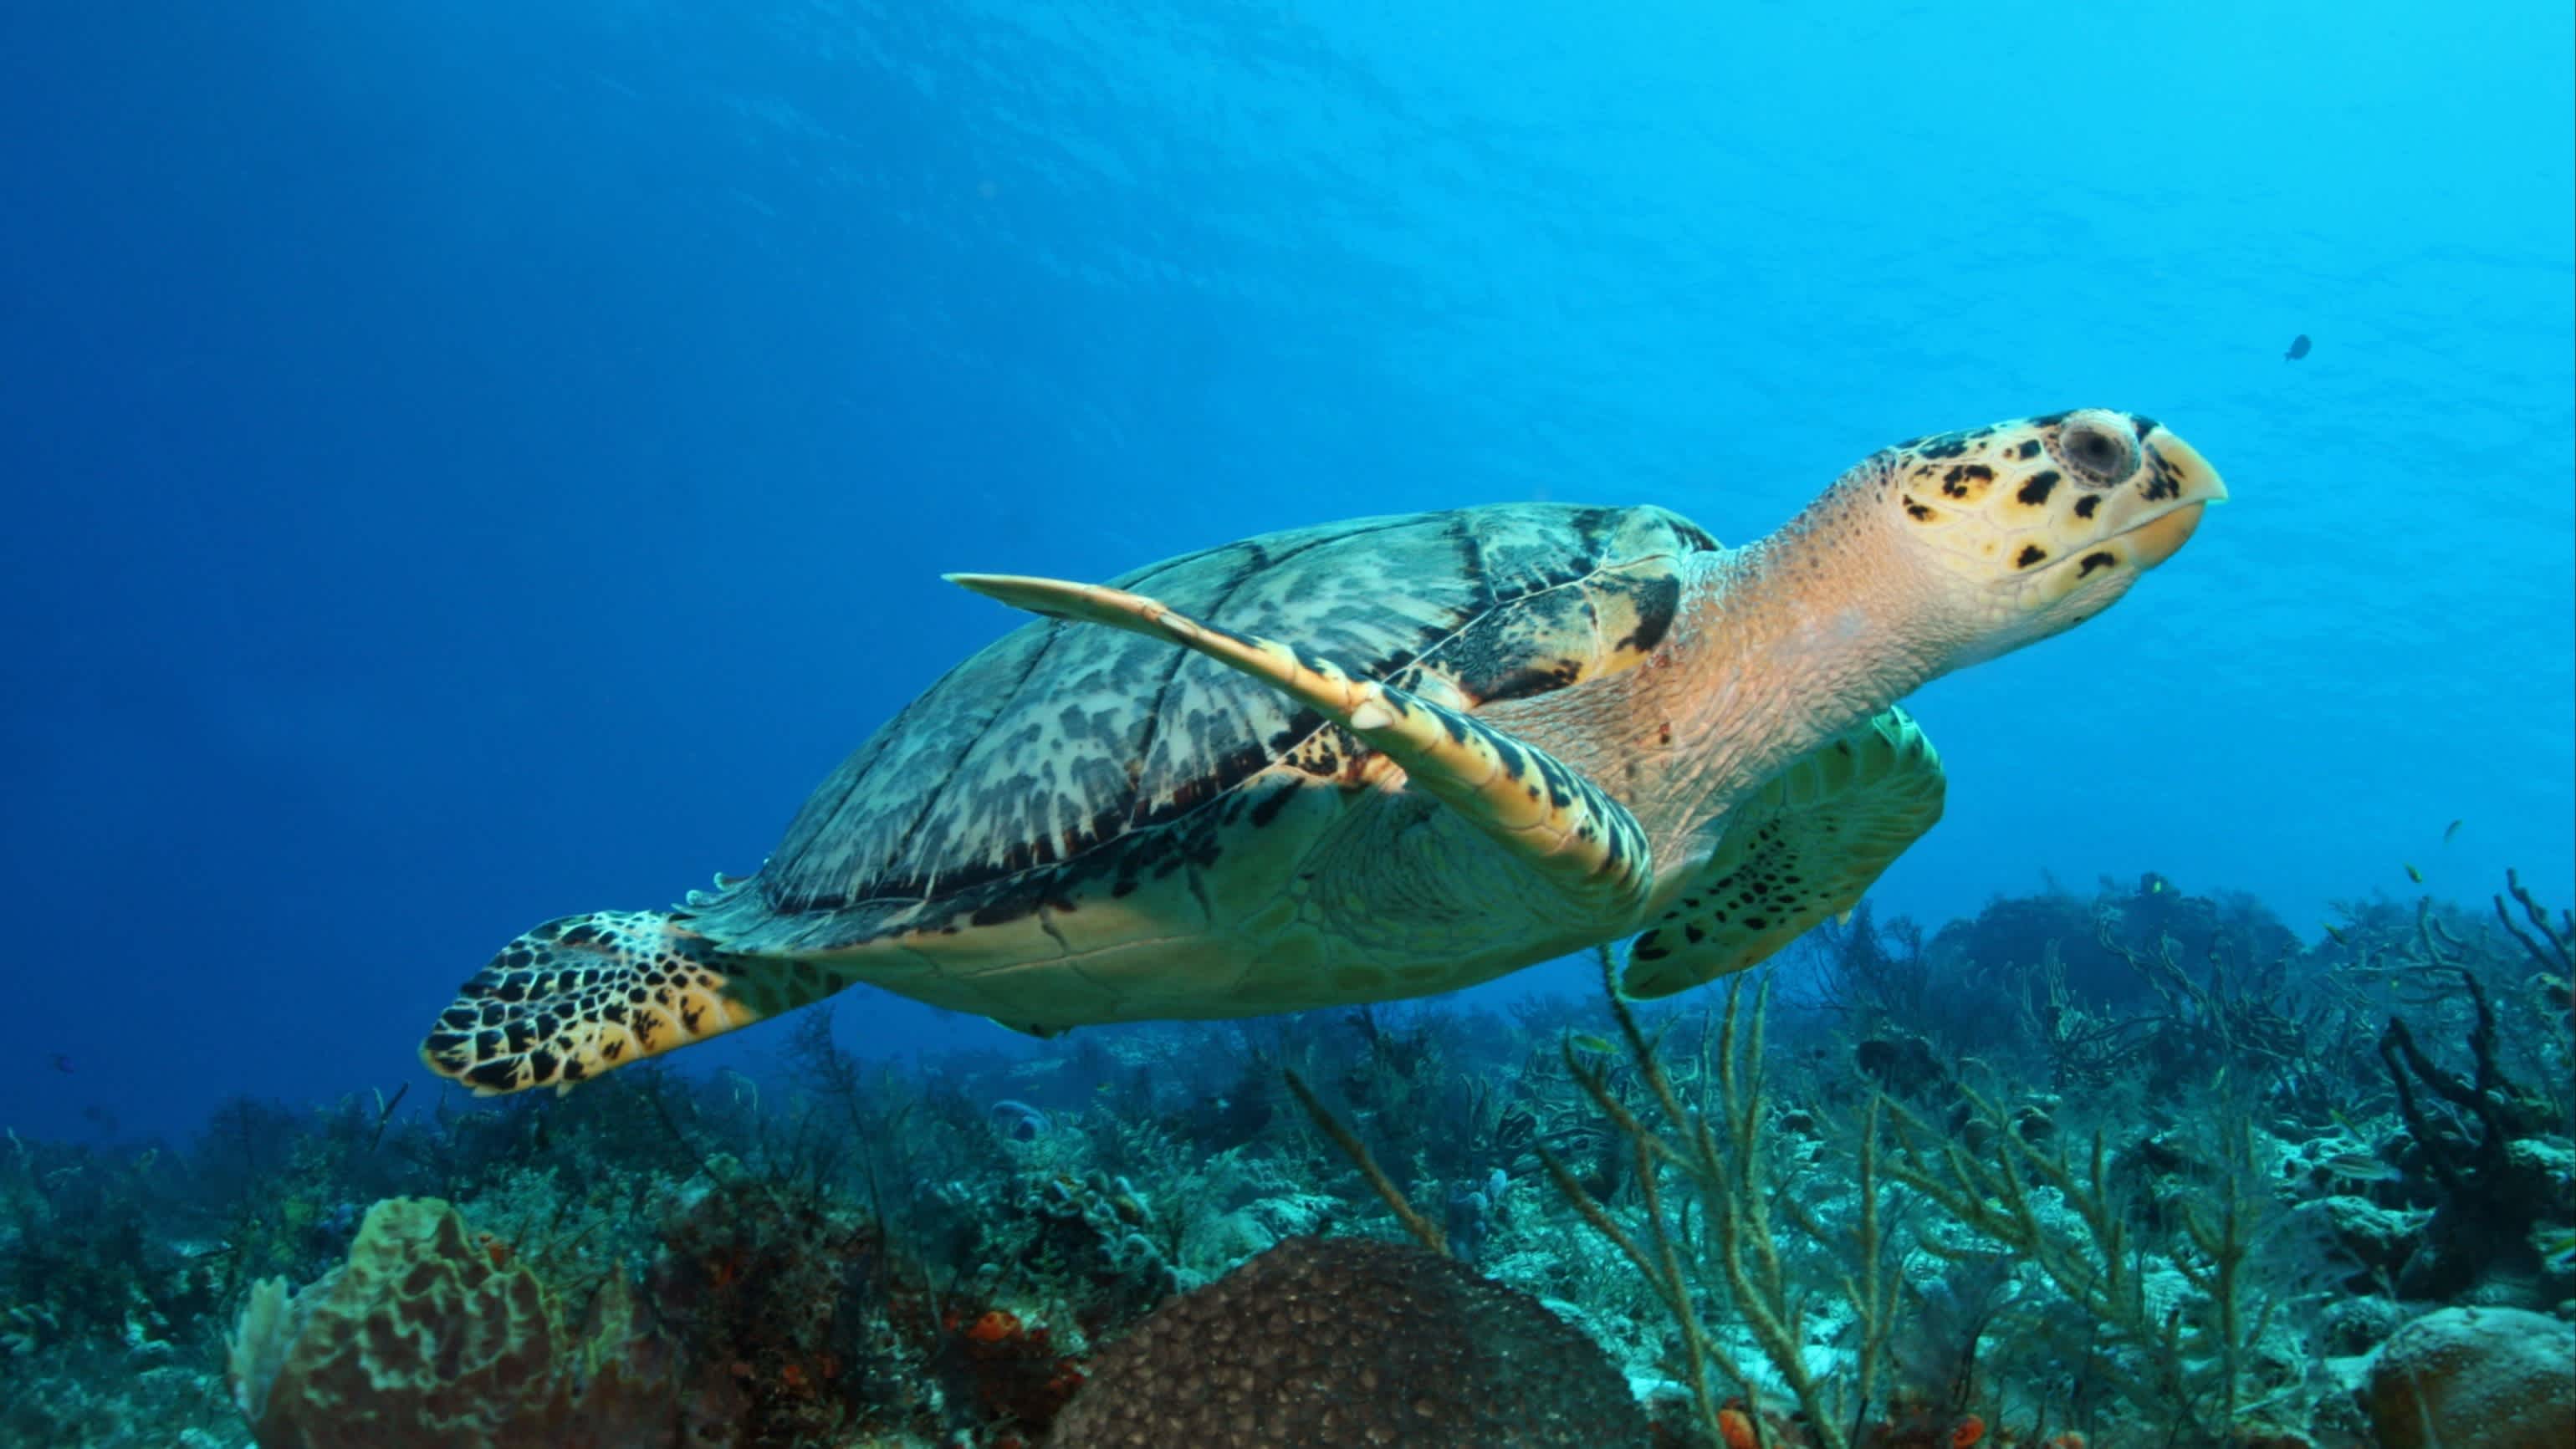 Karettschildkröte (Eretmochelys imbricata) schwimmt über ein Korallenriff im Golf von Mexiko - Cozumel, Mexiko